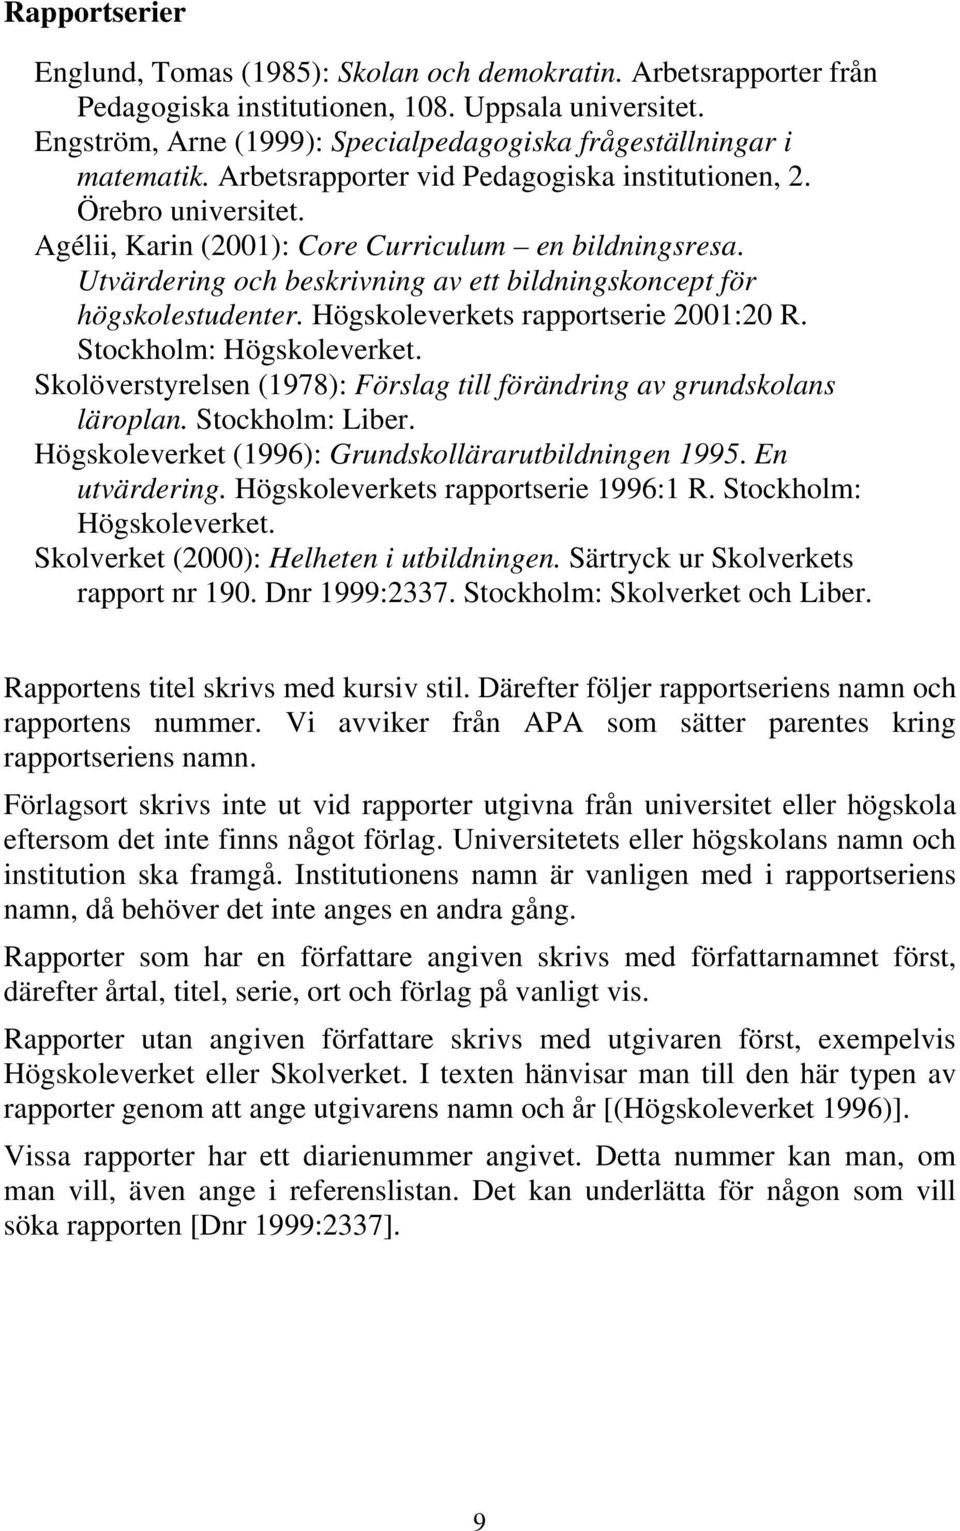 Utvärdering och beskrivning av ett bildningskoncept för högskolestudenter. Högskoleverkets rapportserie 2001:20 R. Stockholm: Högskoleverket.